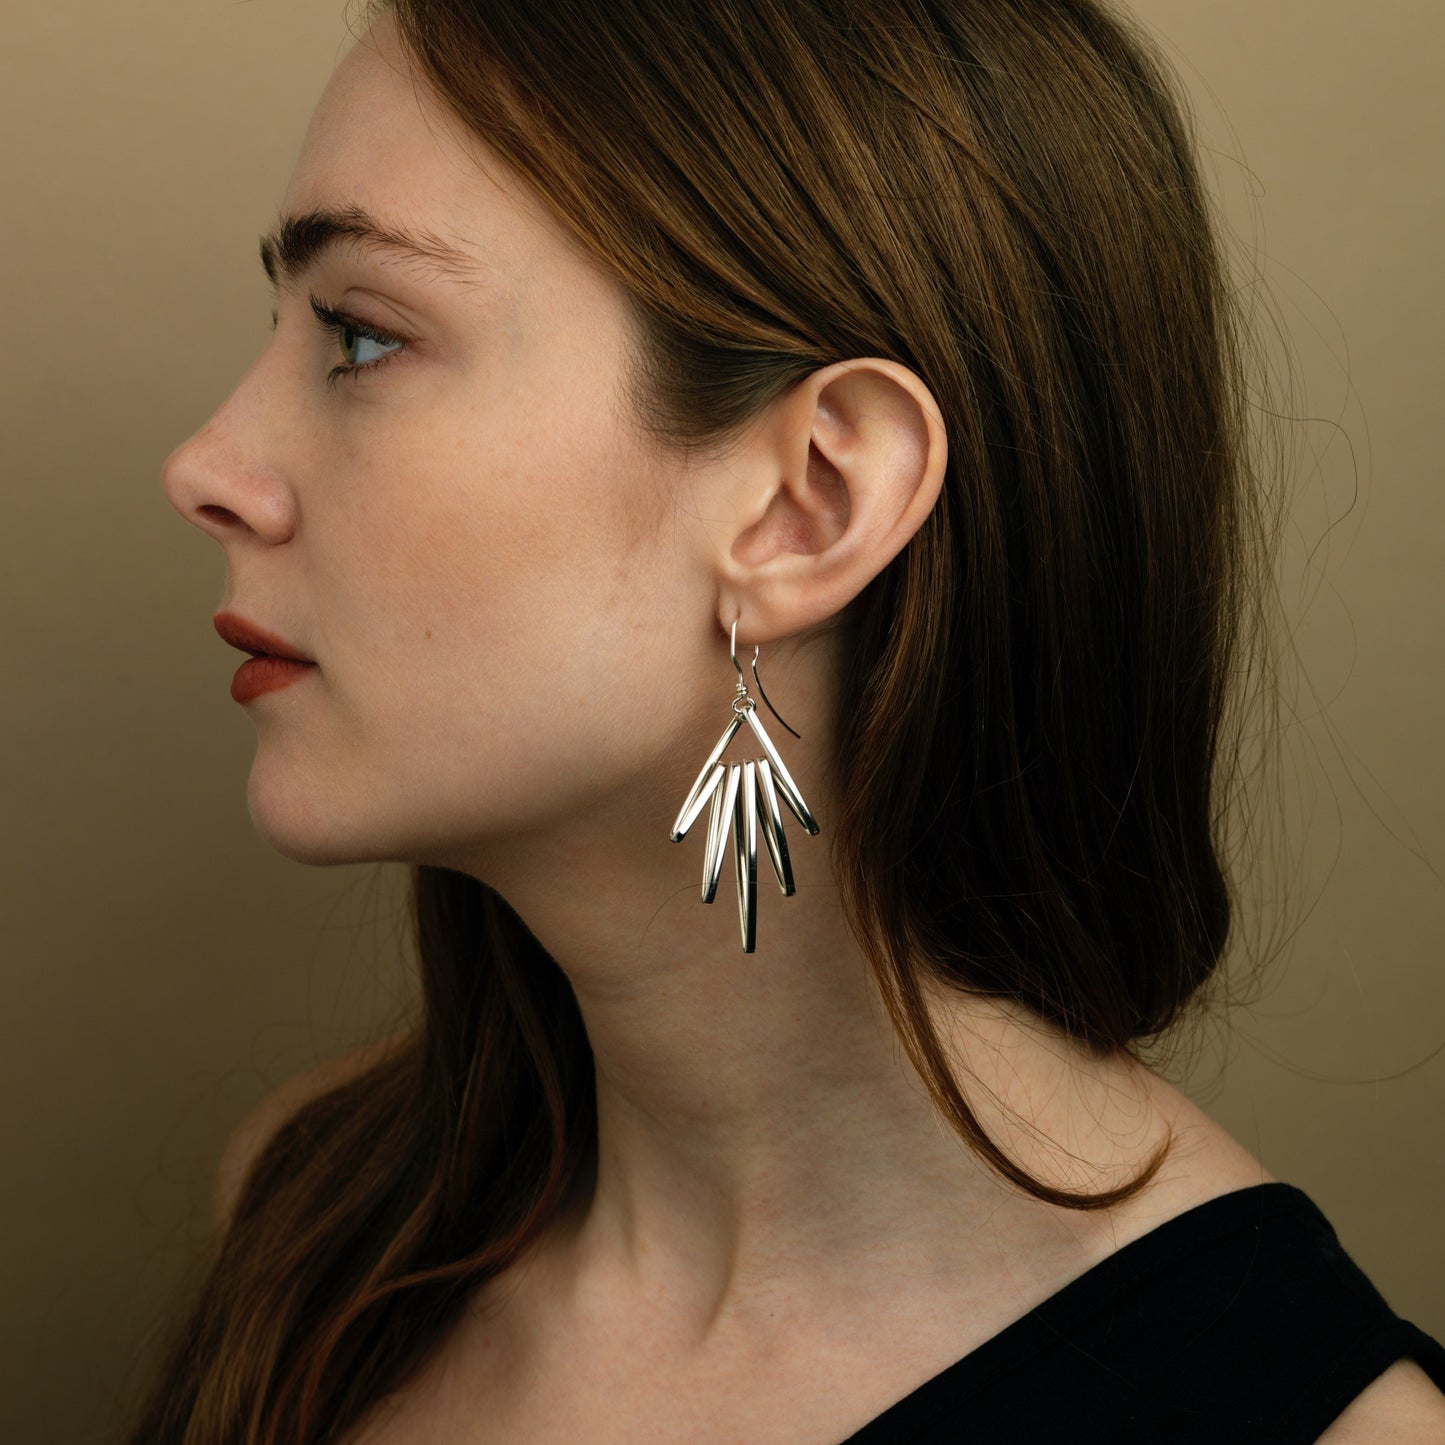 Las Palmas earrings